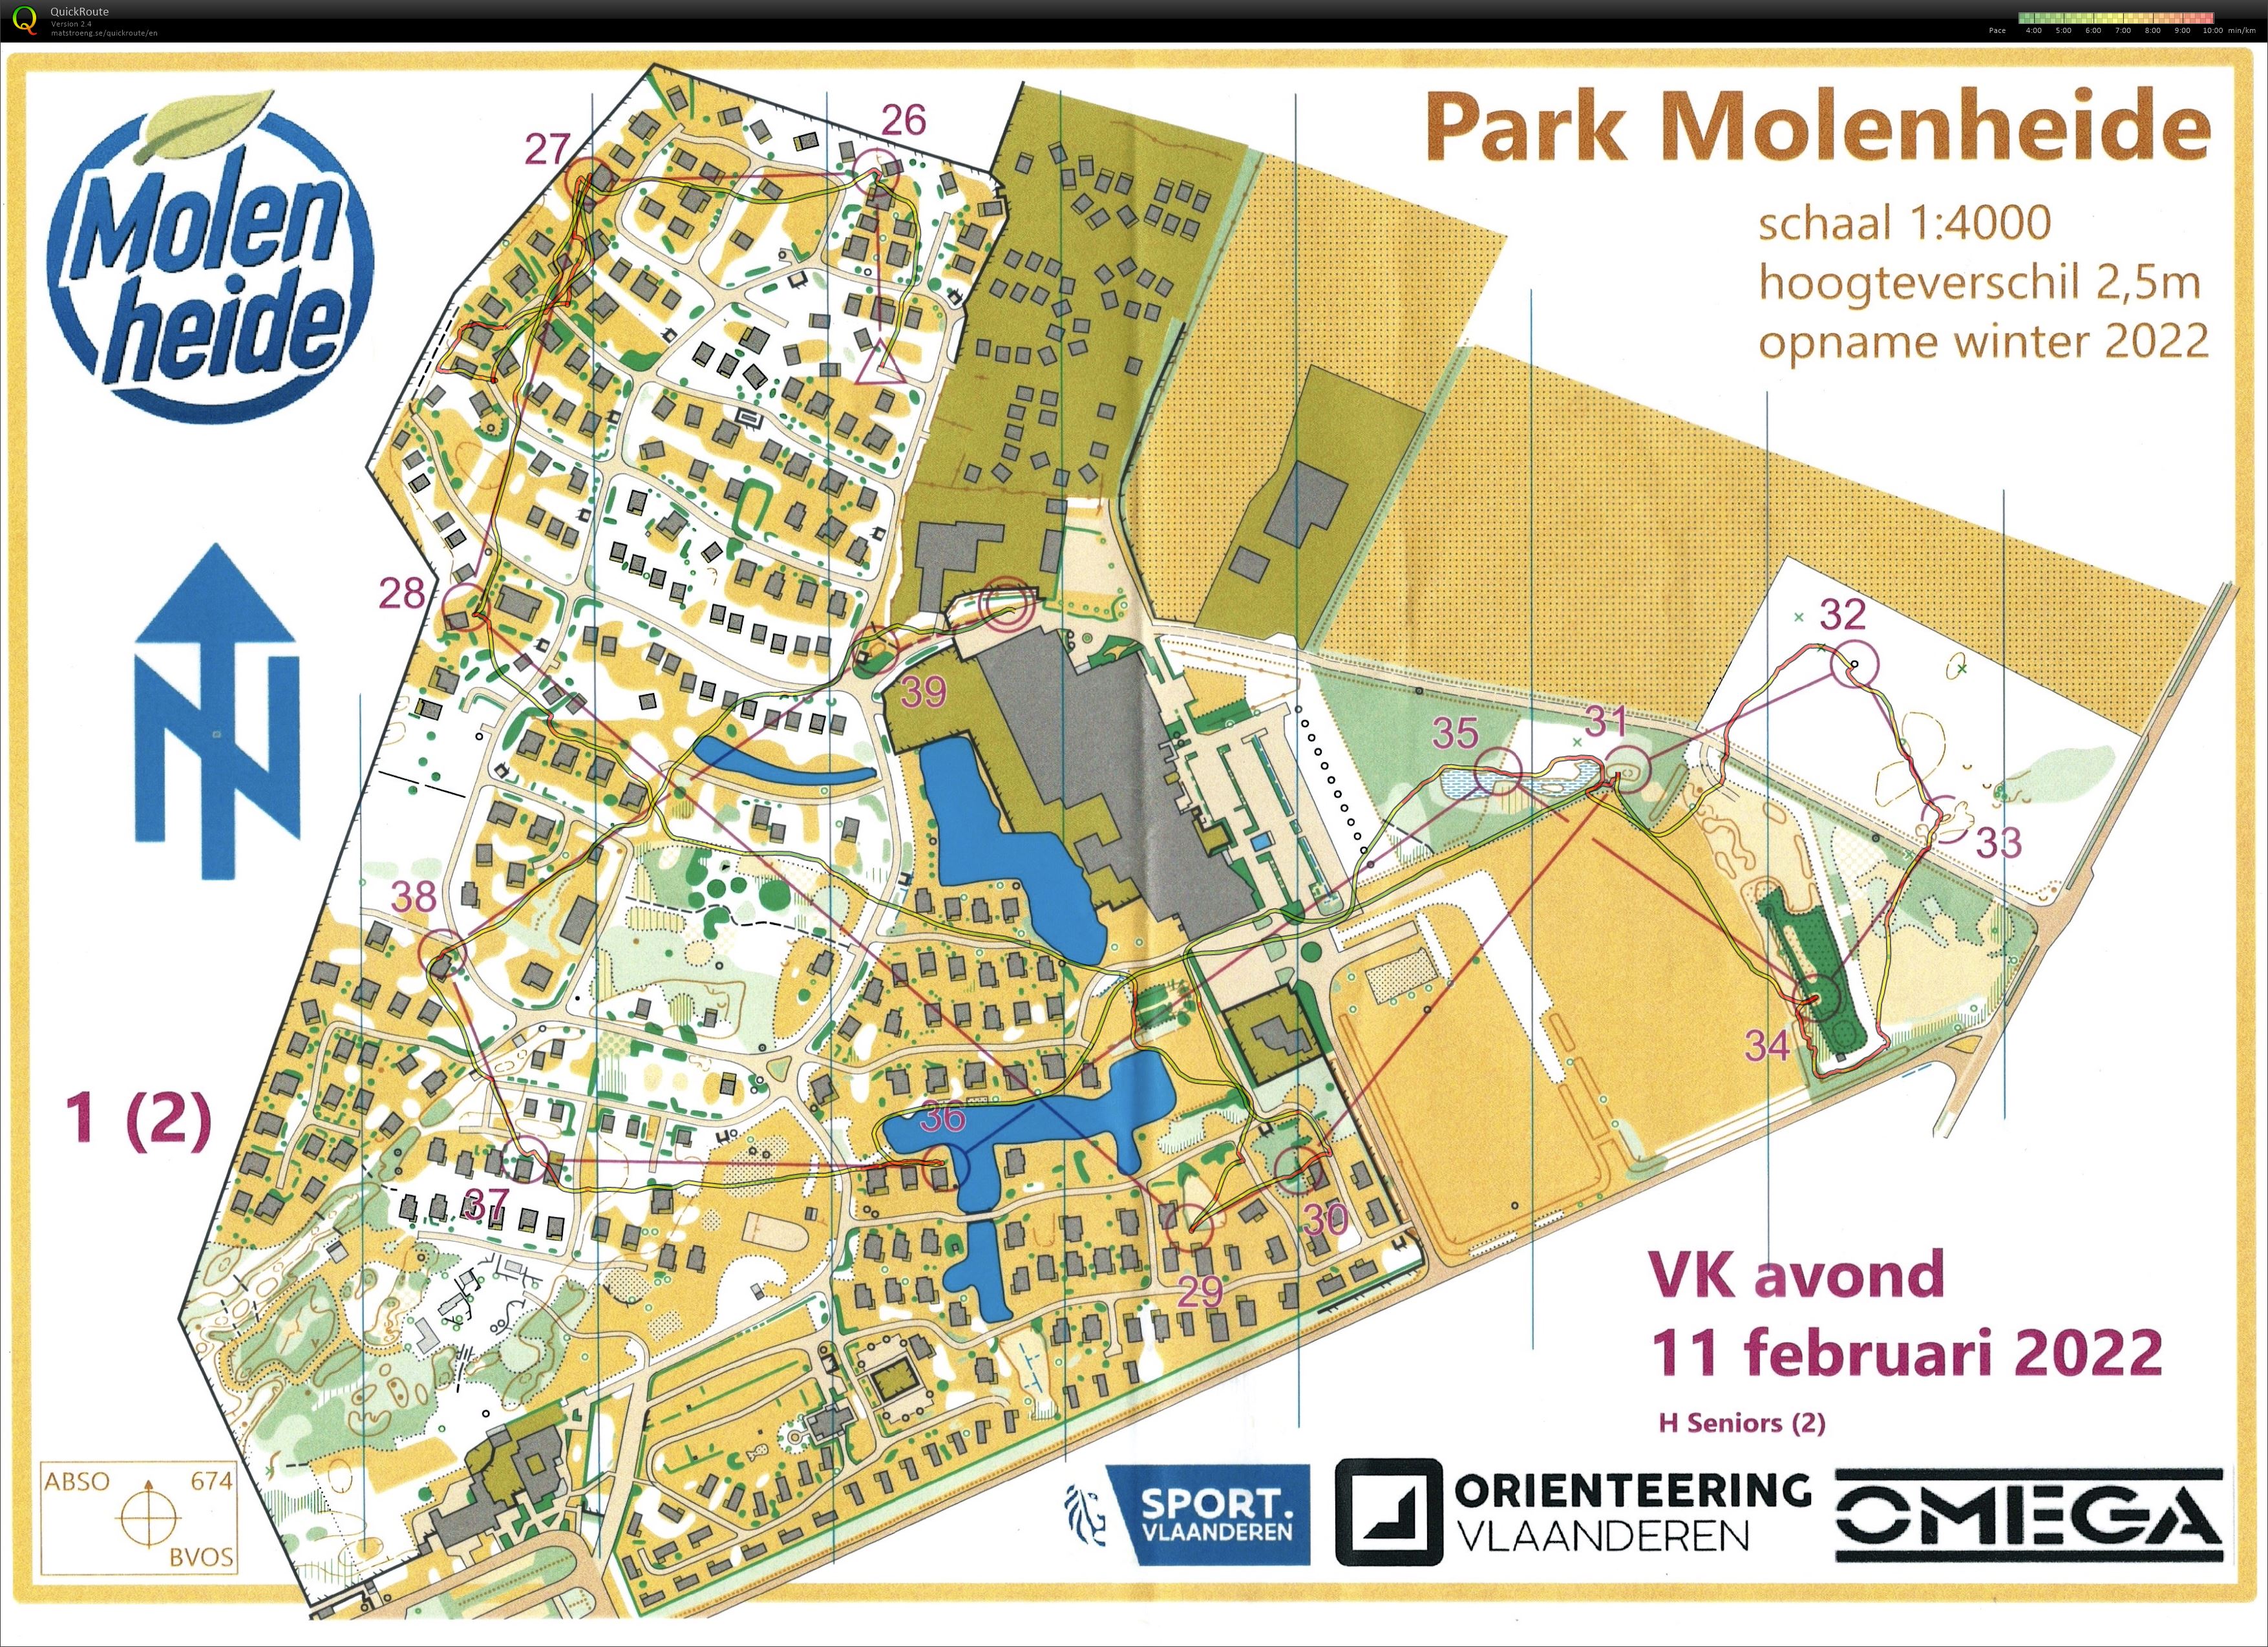 VK Avond - Park Molenheide - 2 (11.02.2022)